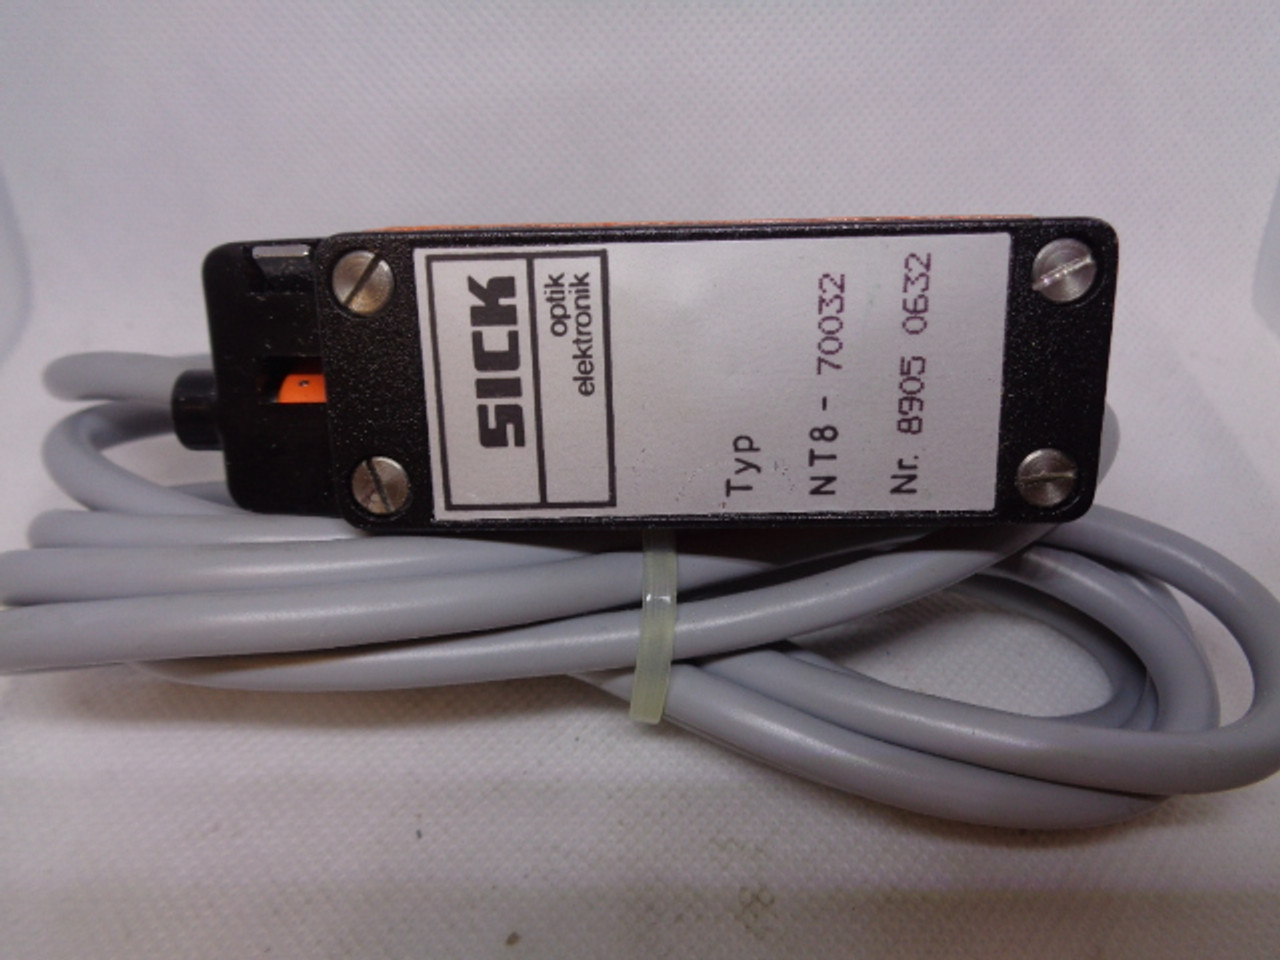 SICK Type NT8-70032 Contrast Sensor